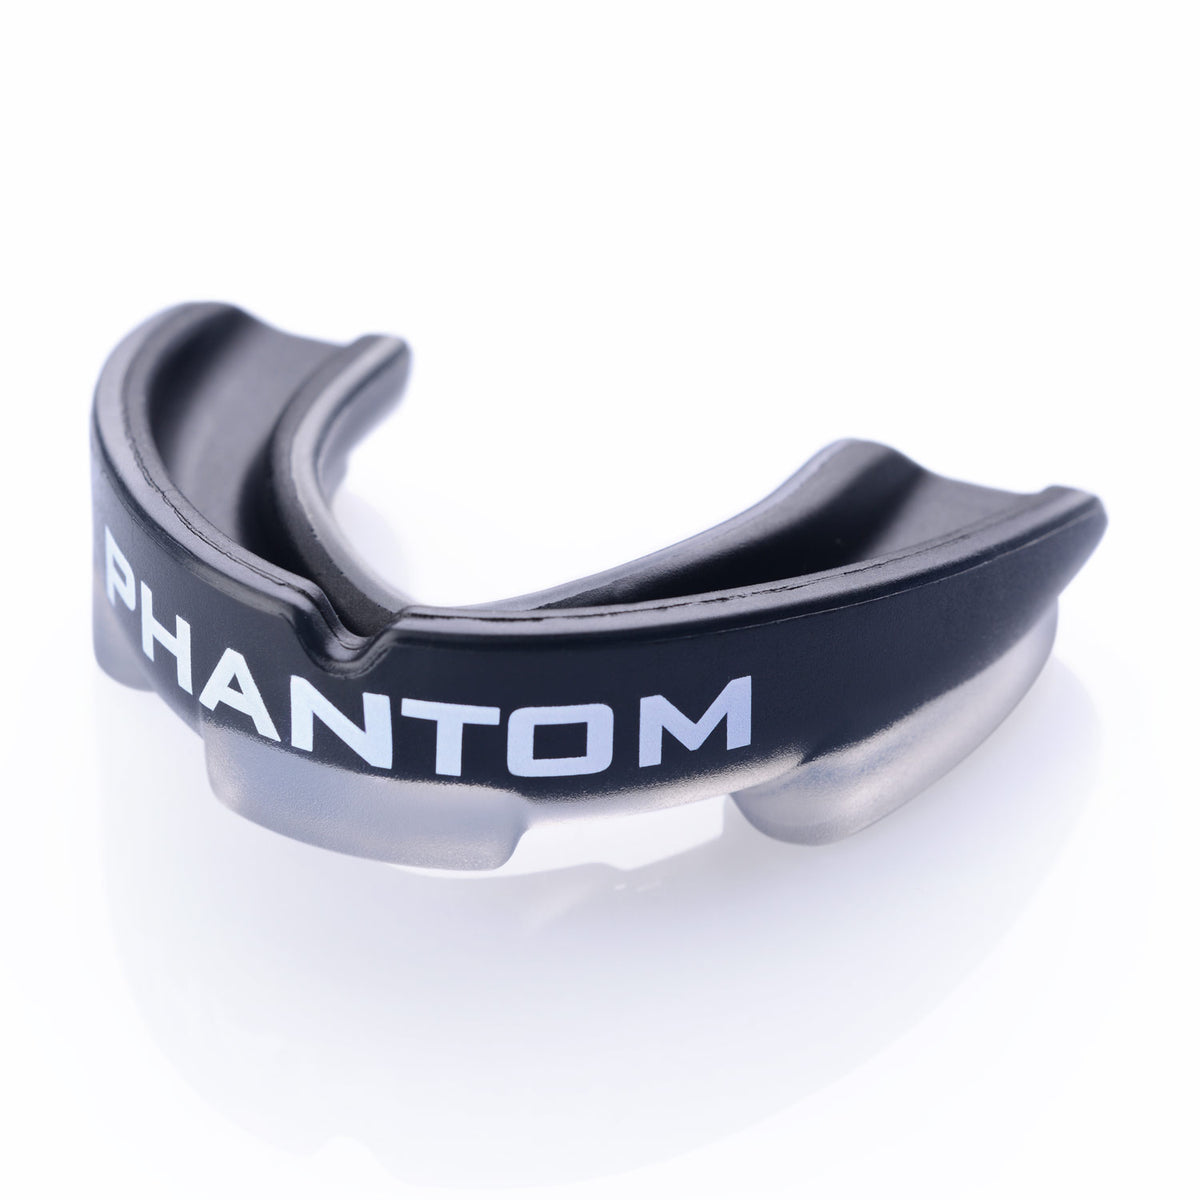 Phantom Impact Zahnschutz in Schwarz für Kampfsport